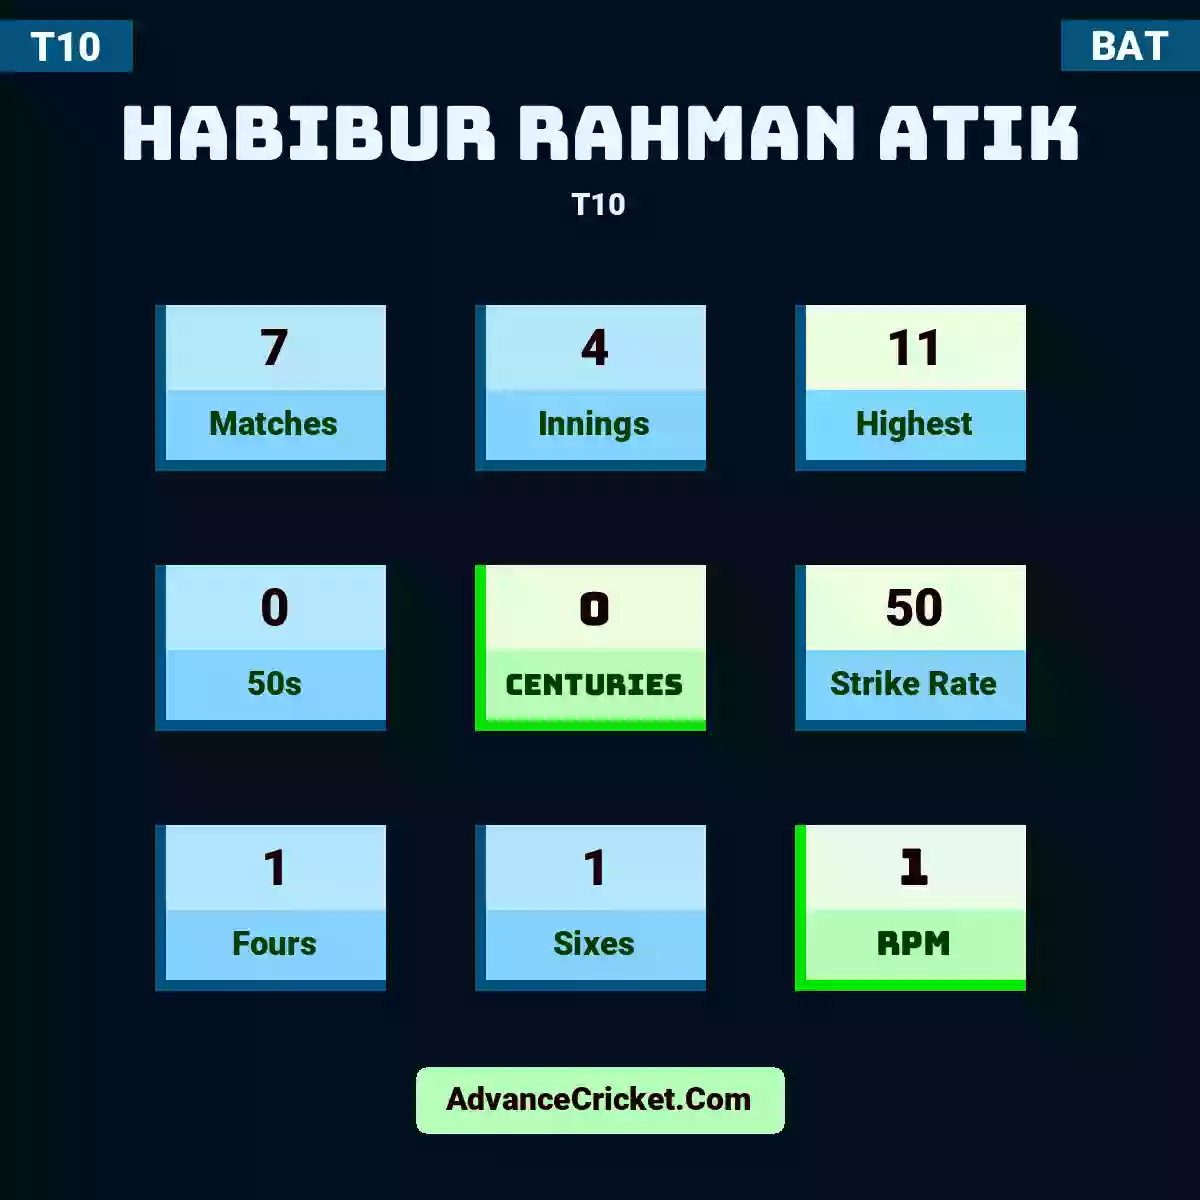 Habibur Rahman Atik T10 , Habibur Rahman Atik played 7 matches, scored 11 runs as highest, 0 half-centuries, and 0 centuries, with a strike rate of 50. H.Rahman.Atik hit 1 fours and 1 sixes, with an RPM of 1.